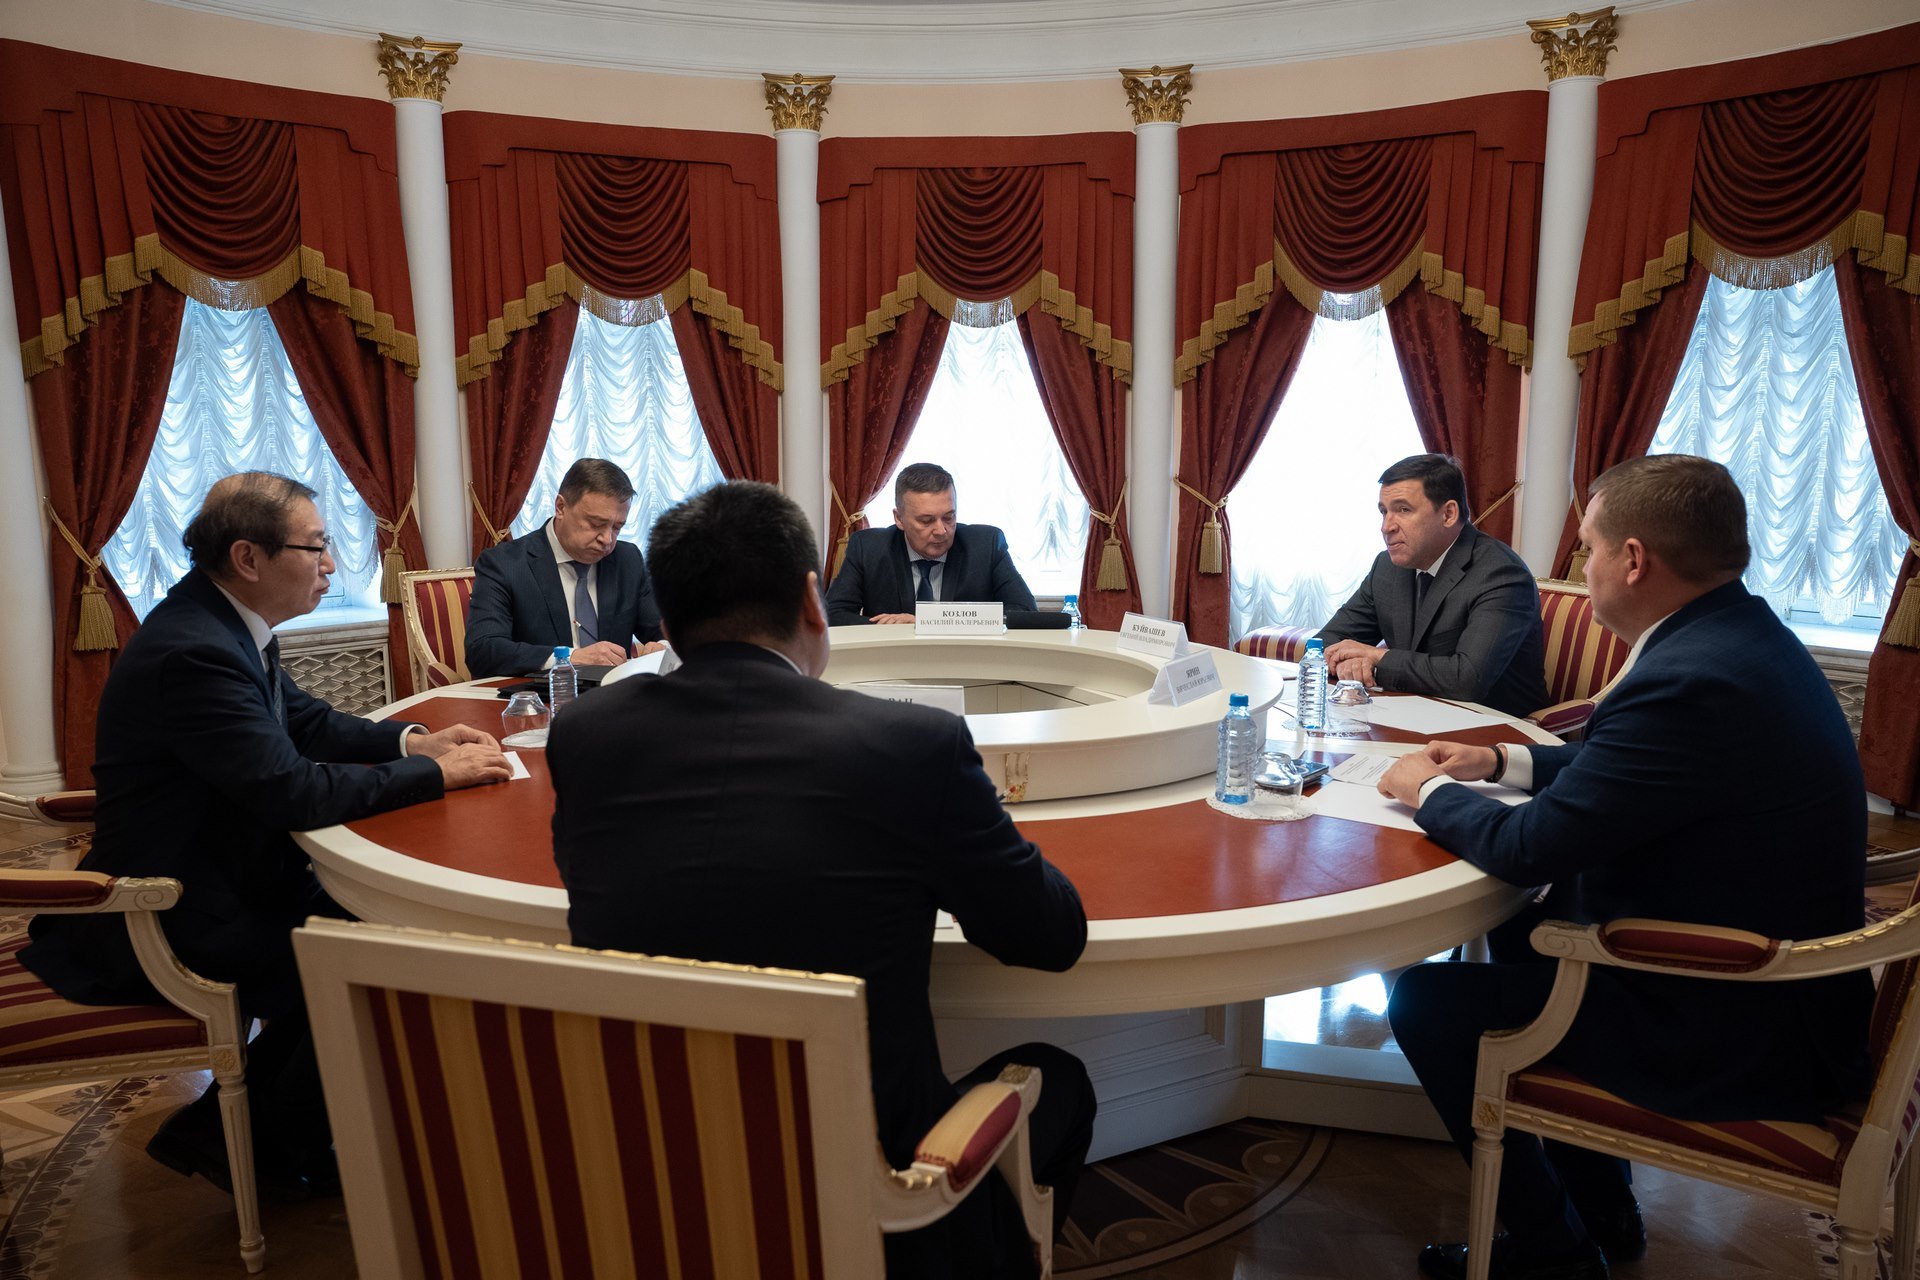 Свердловский губернатор Евгений Куйвашев поблагодарил генкоснула КНР в Екатеринбурге за укрепление торгово-экономического партнерства